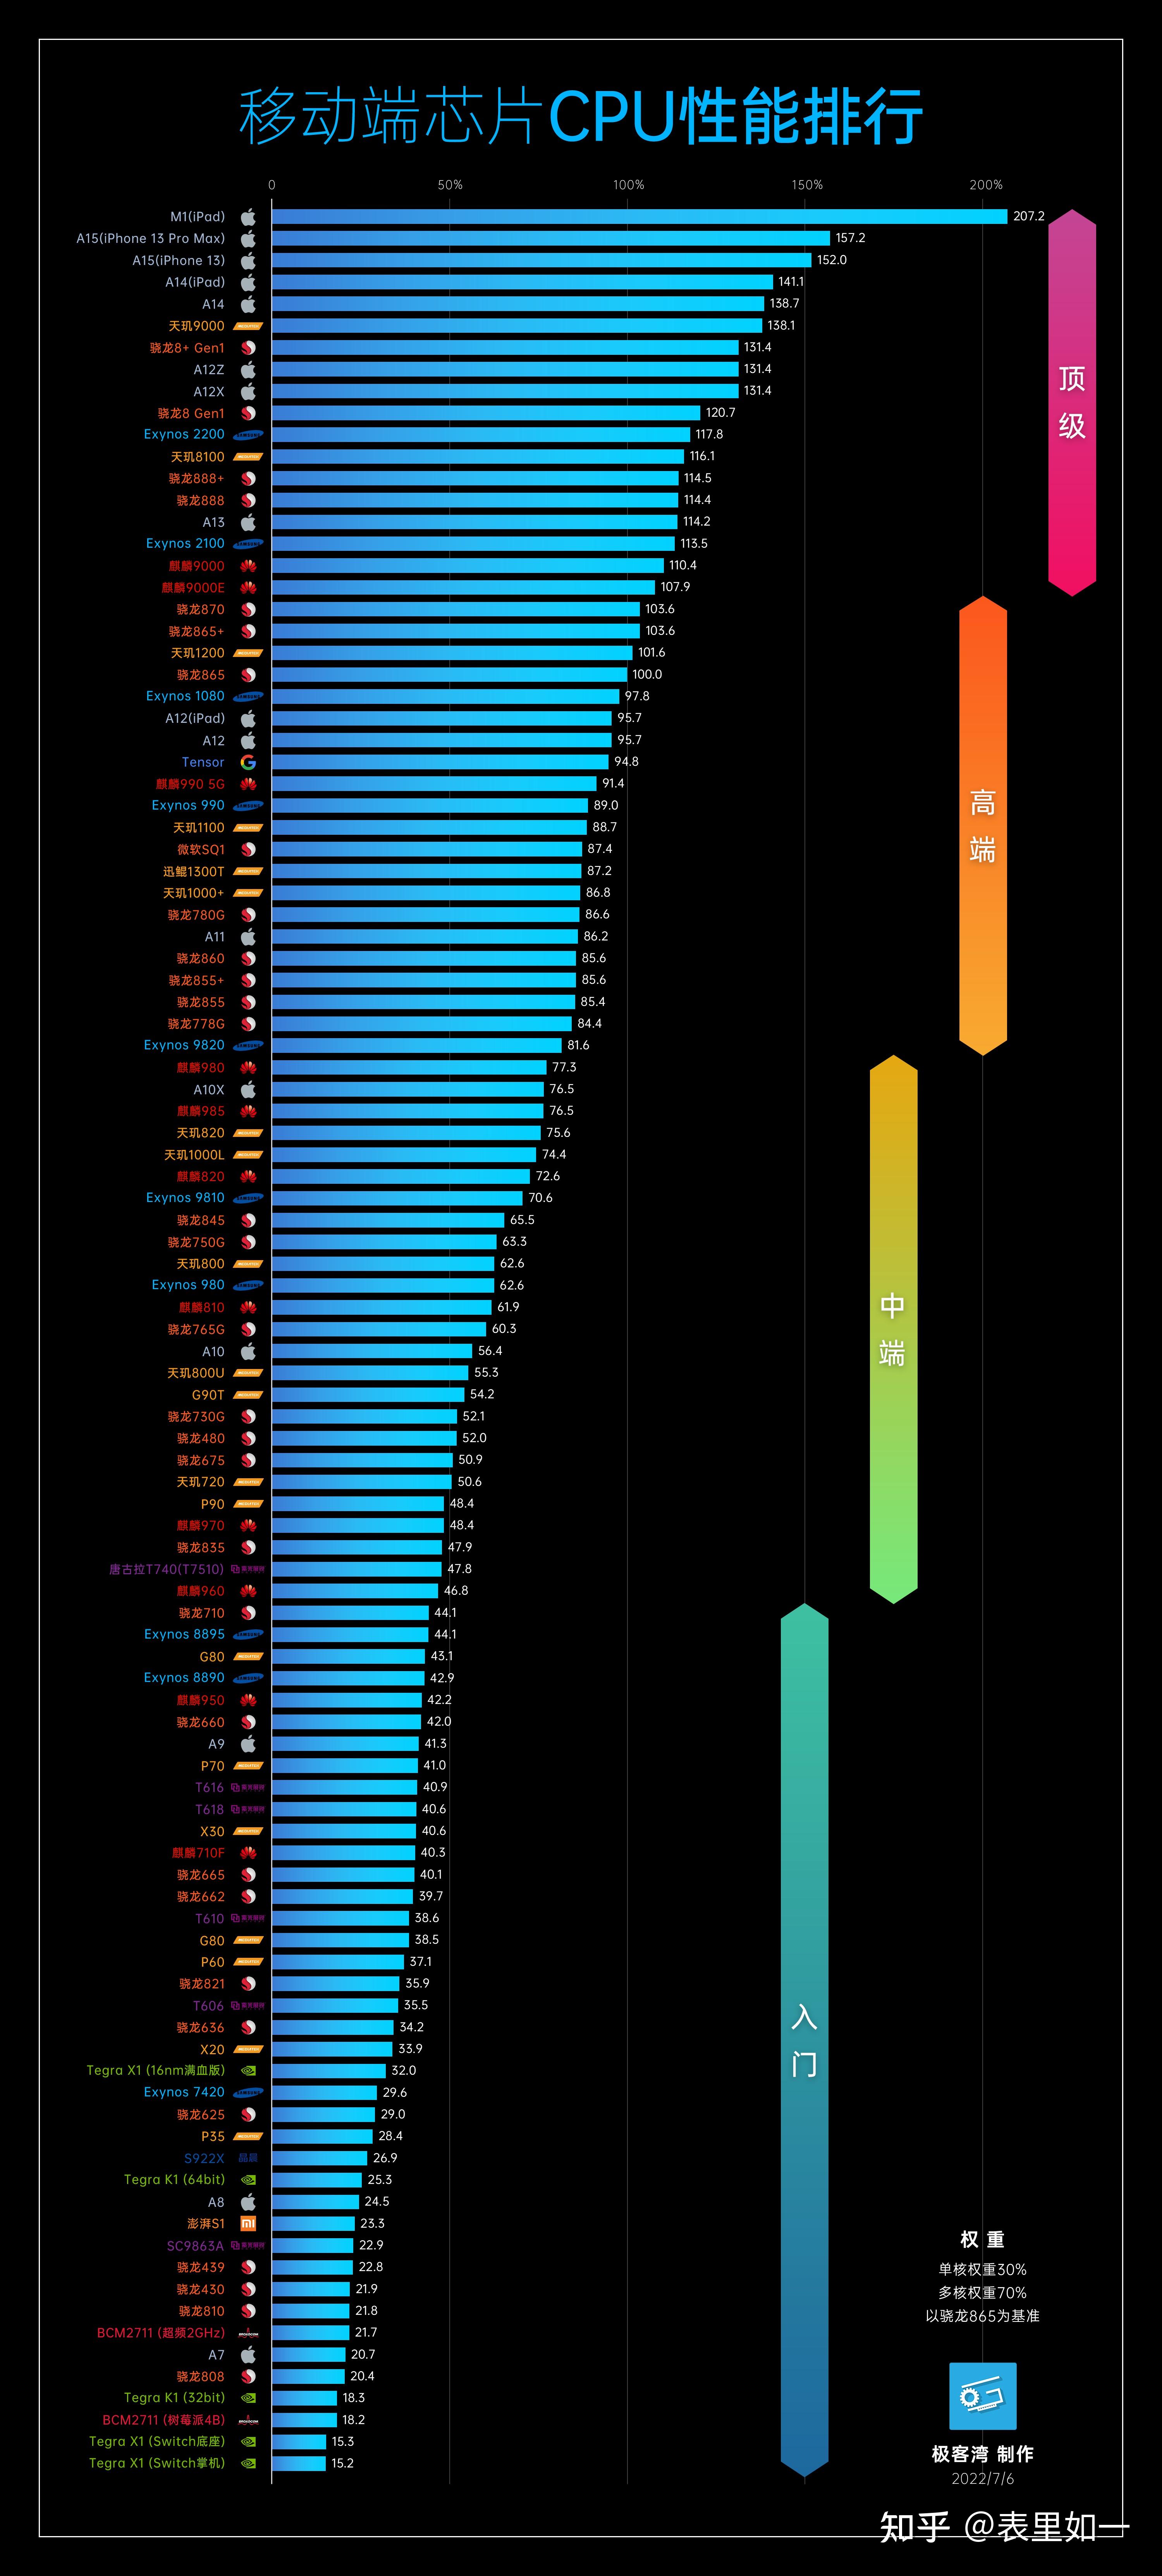 2022 年 8 月手机处理器性能排行榜/天梯图 